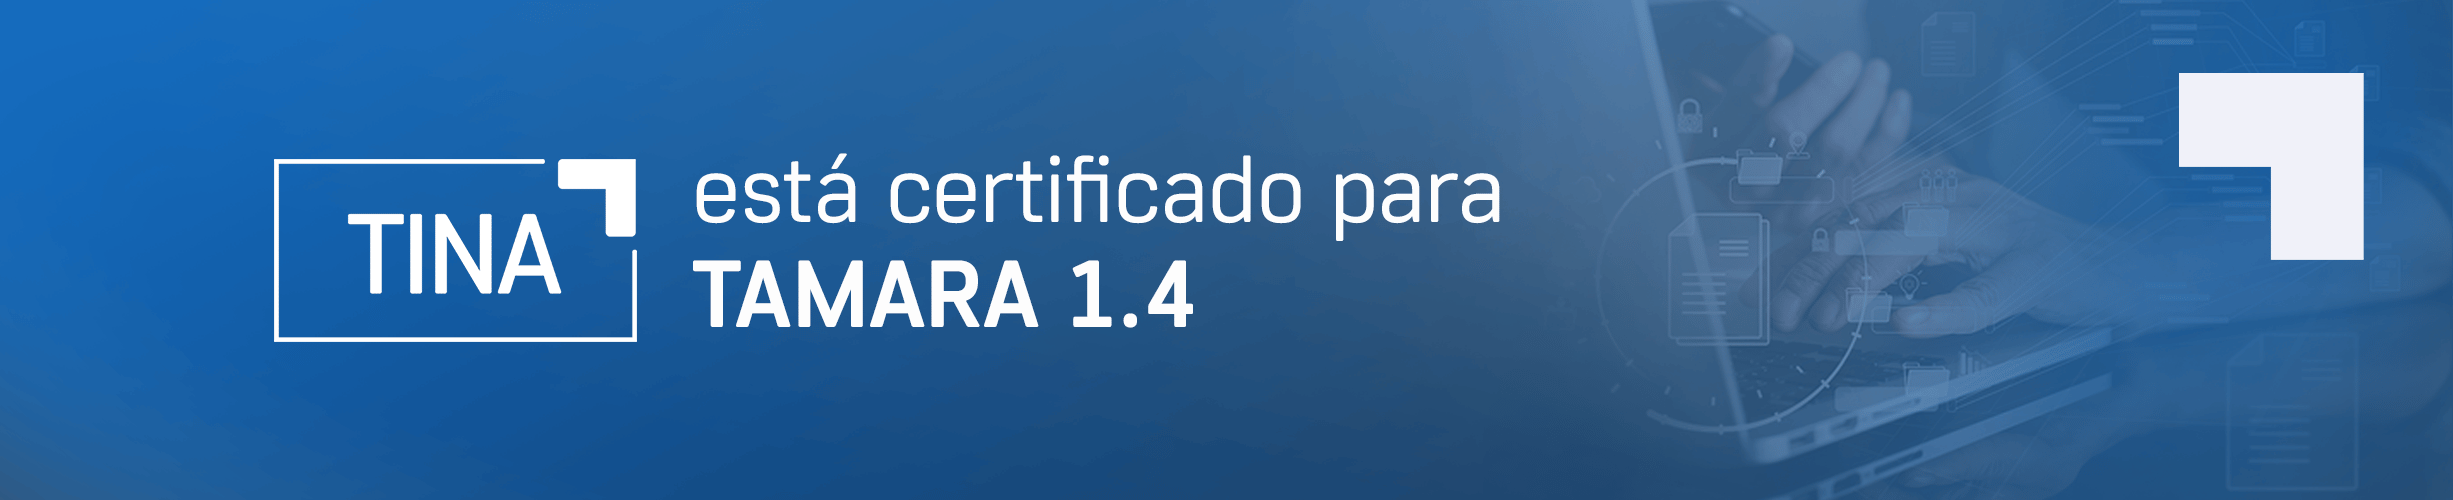 TINA is certified for TAMARA 1.4  